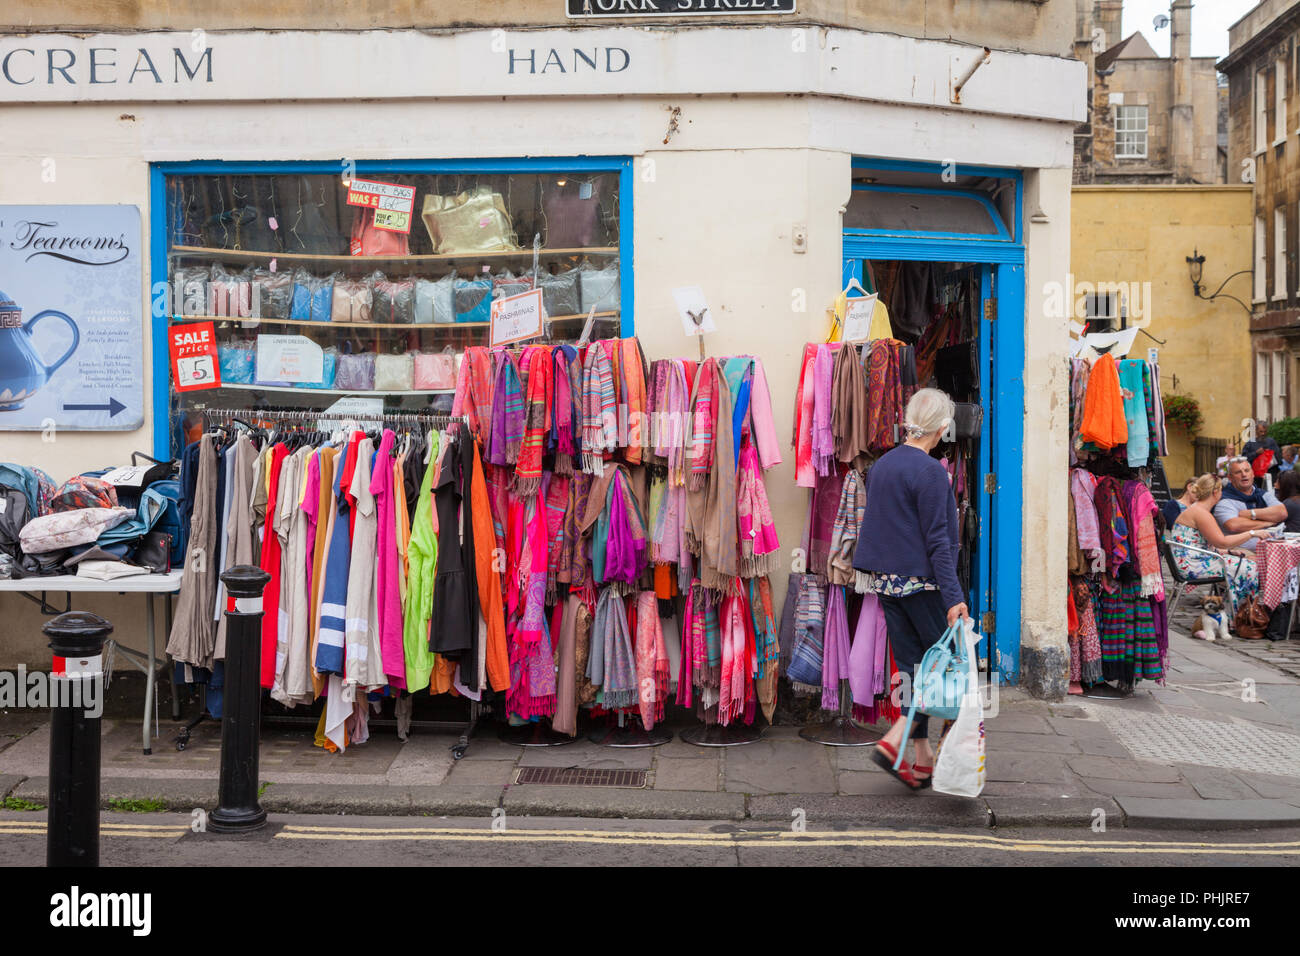 Negozio di vendita secondi vestiti, Bath Regno Unito Foto stock - Alamy